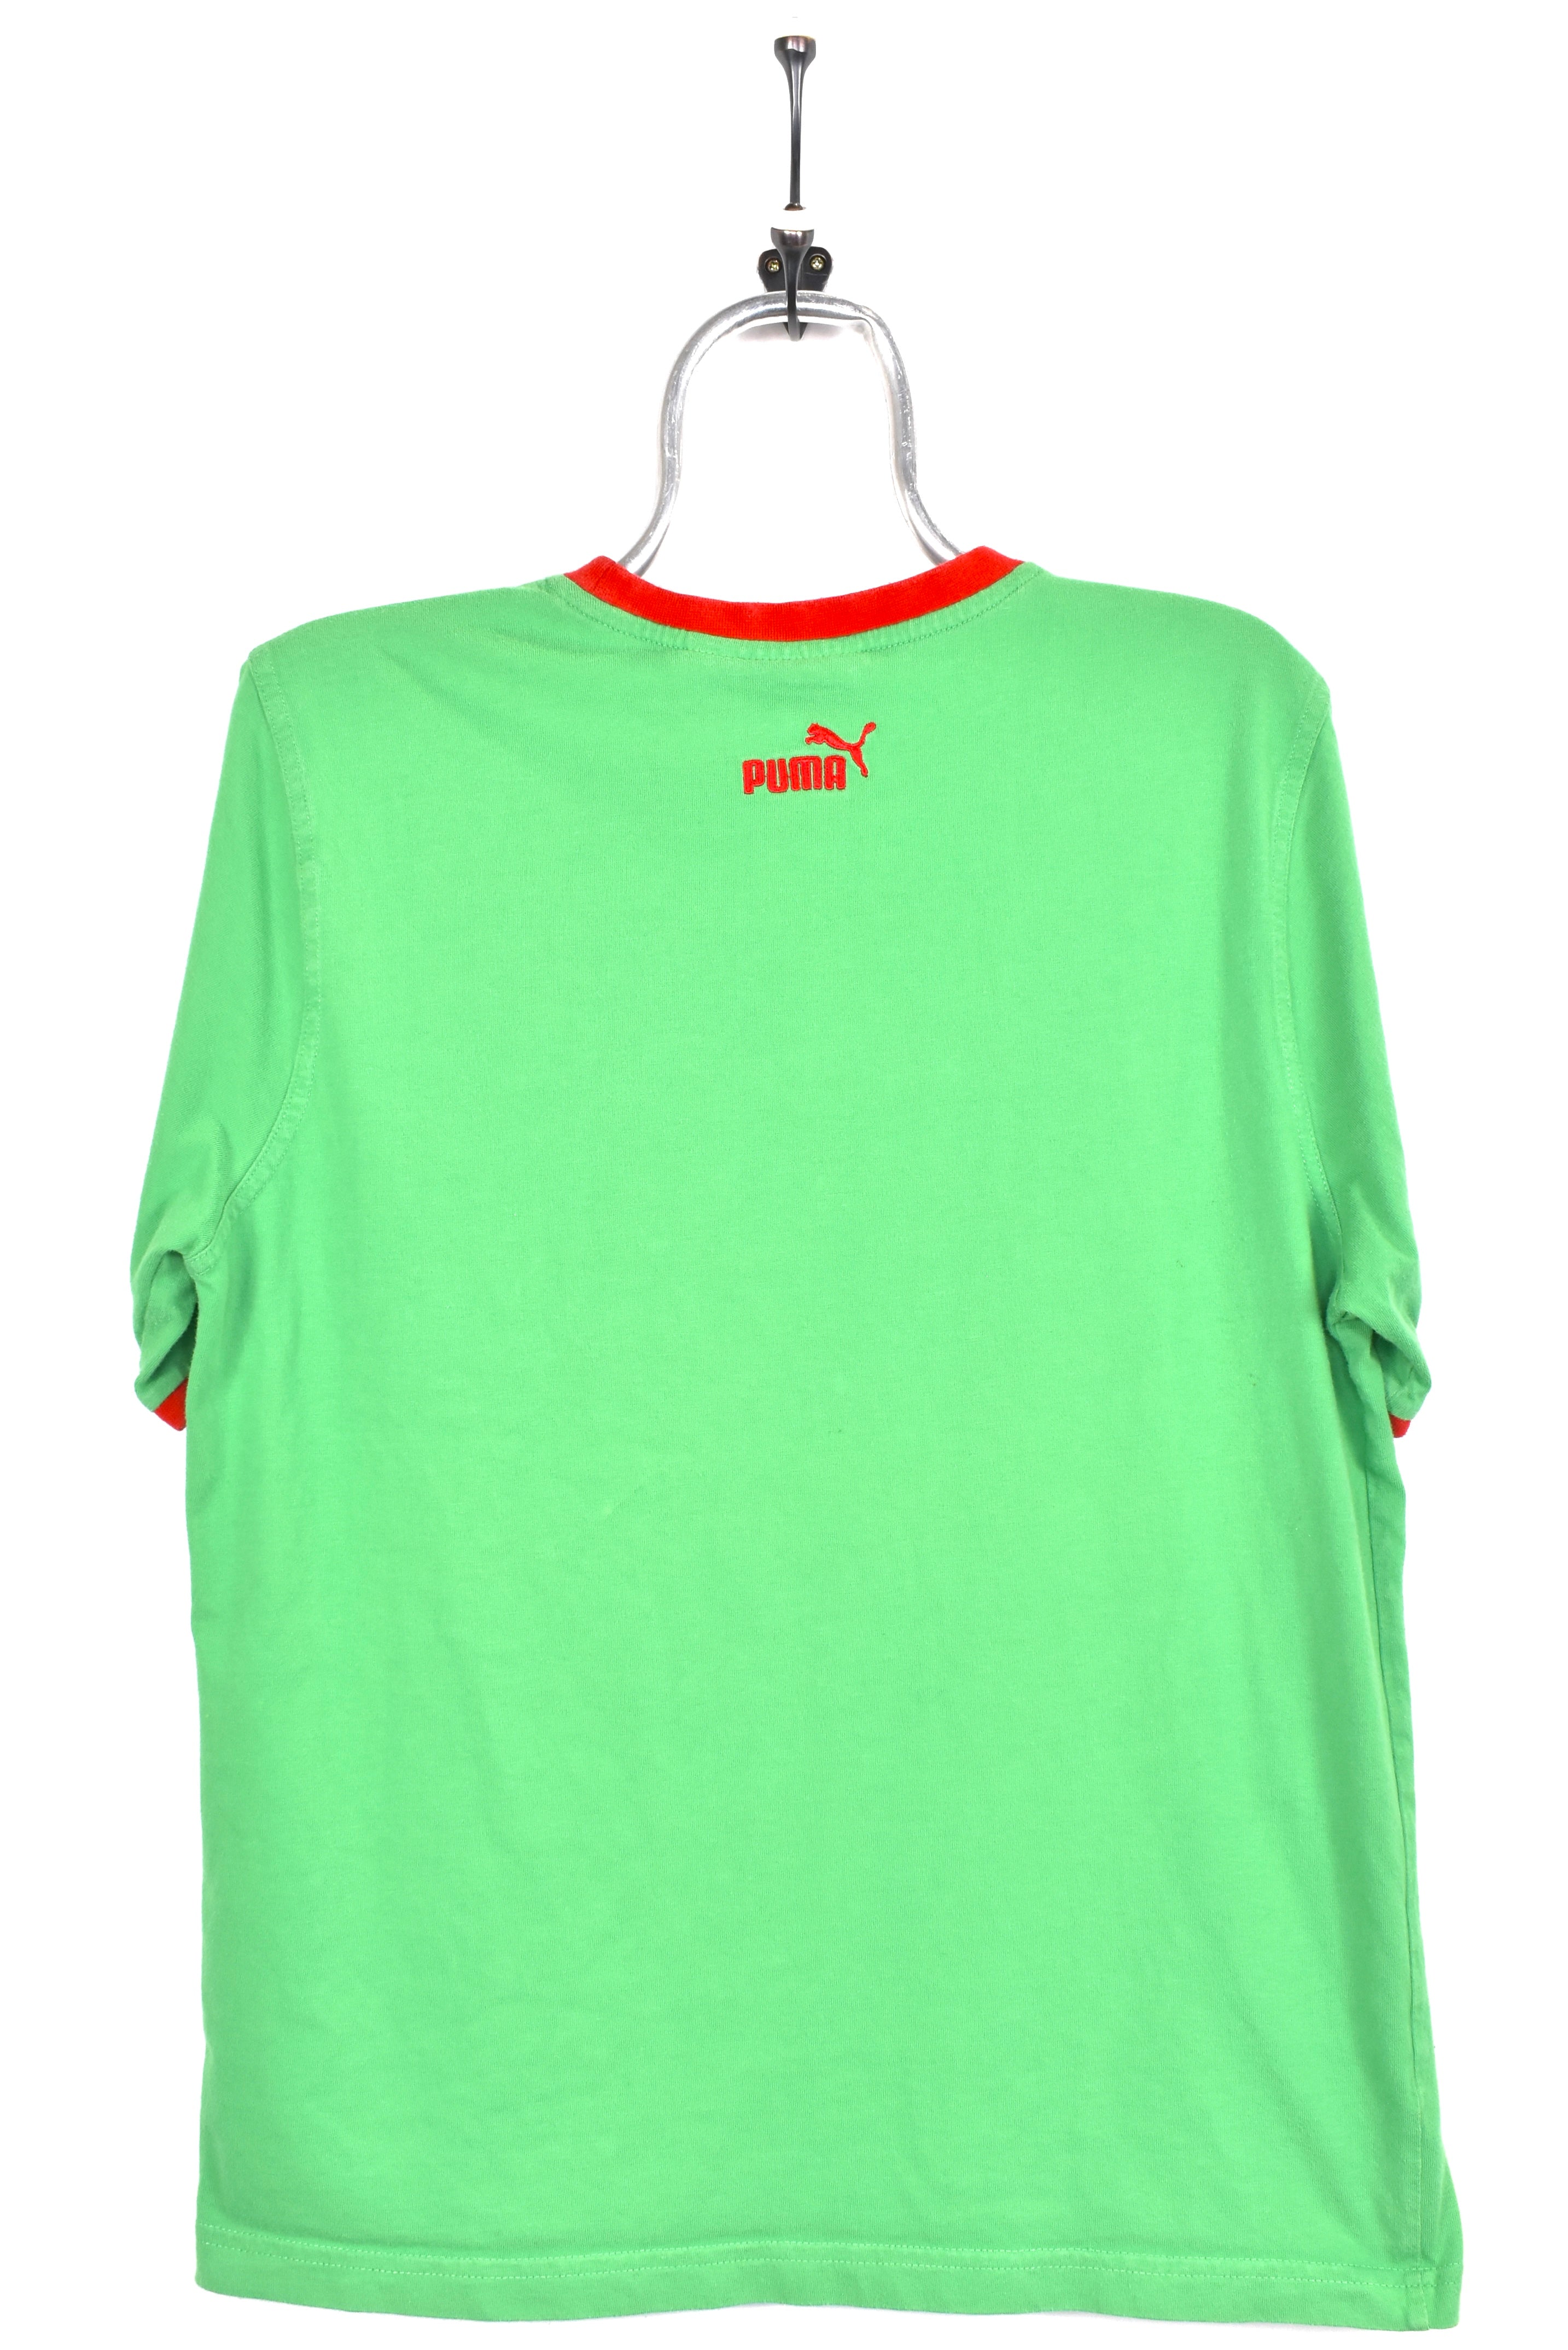 Vintage Puma shirt, green graphic tee - AU M PUMA